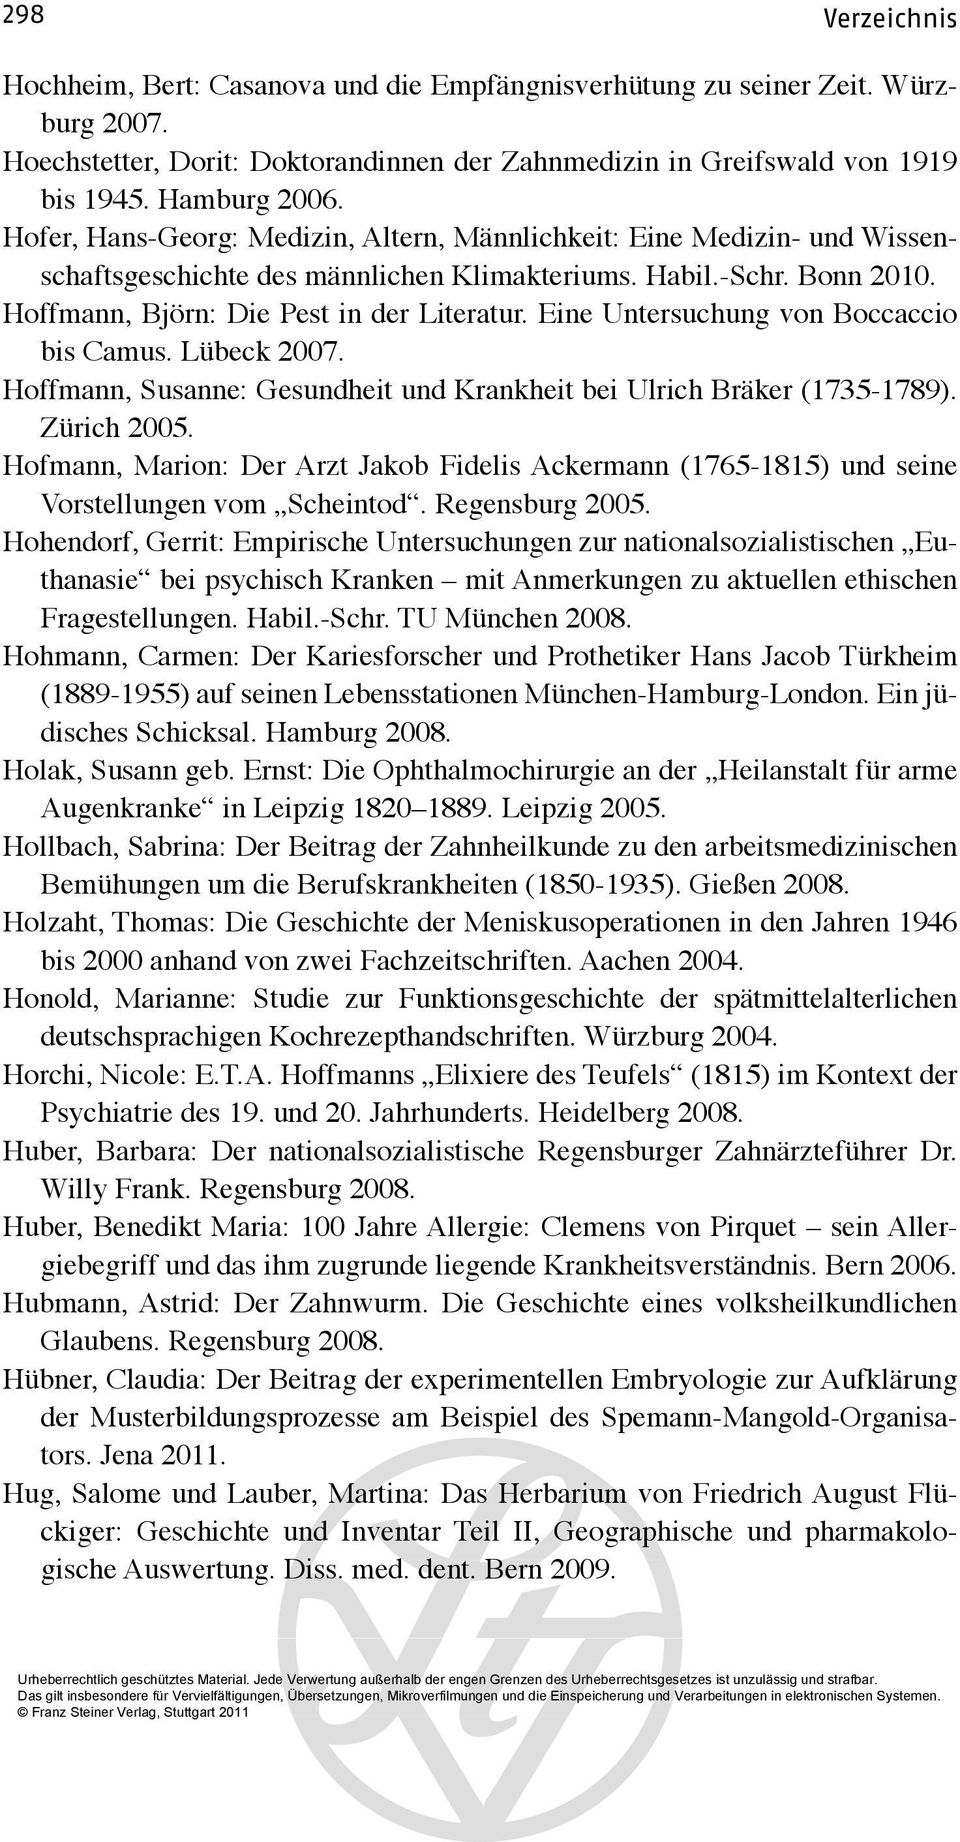 Eine Untersuchung von Boccaccio bis Camus. Lübeck 2007. Hoffmann, Susanne: Gesundheit und Krankheit bei Ulrich Bräker (1735-1789). Zürich 2005.